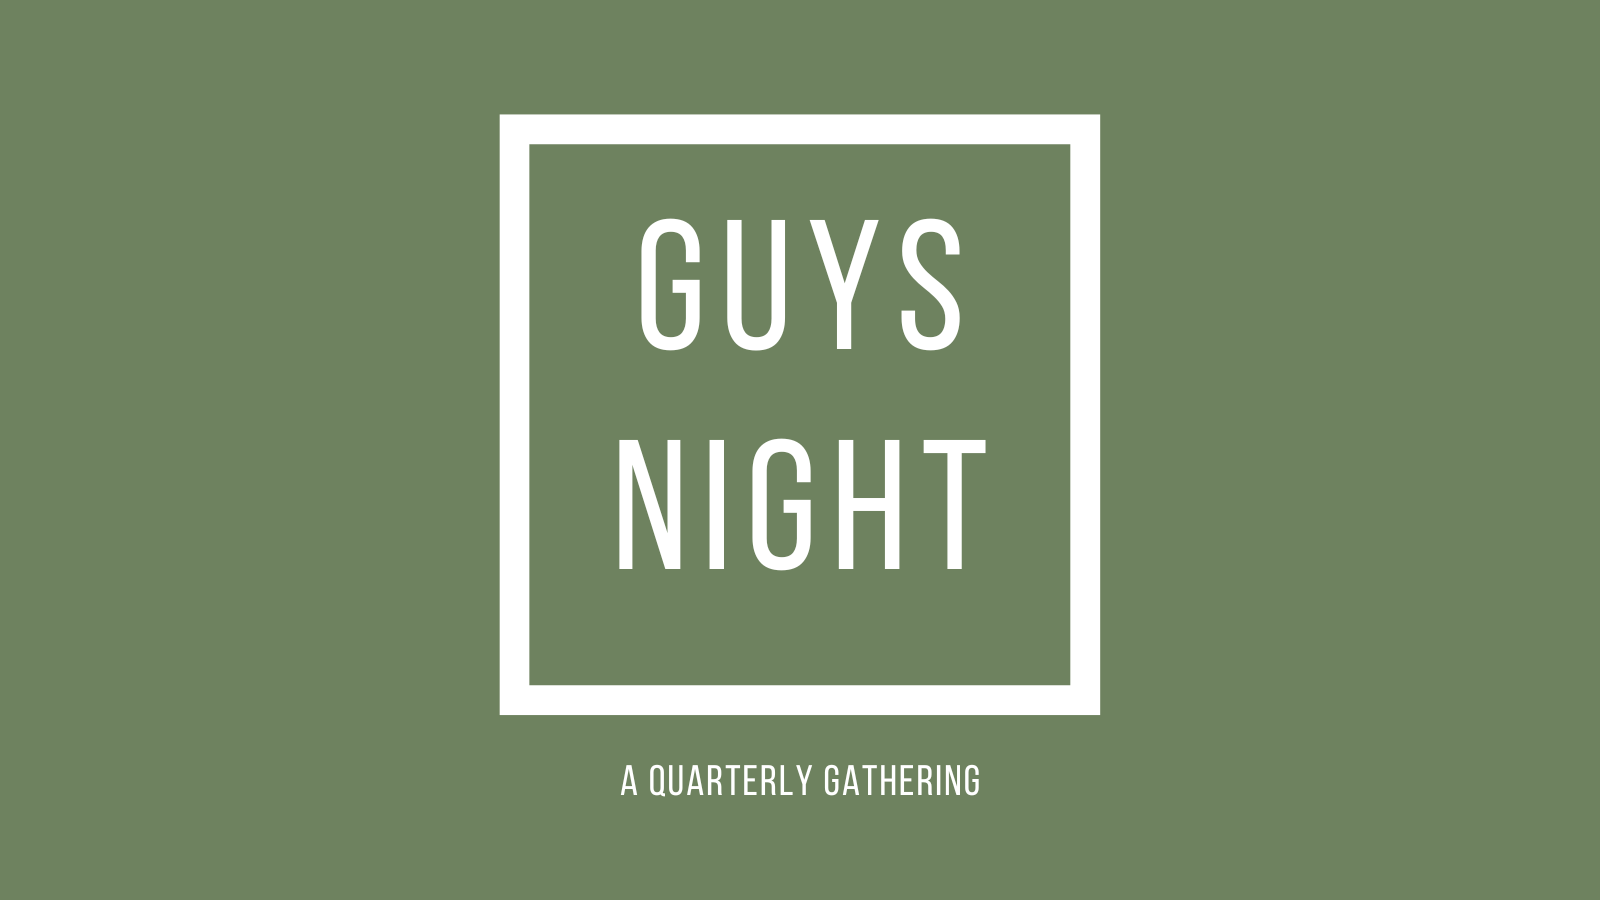 guys night 23 (1600 × 900 px) image